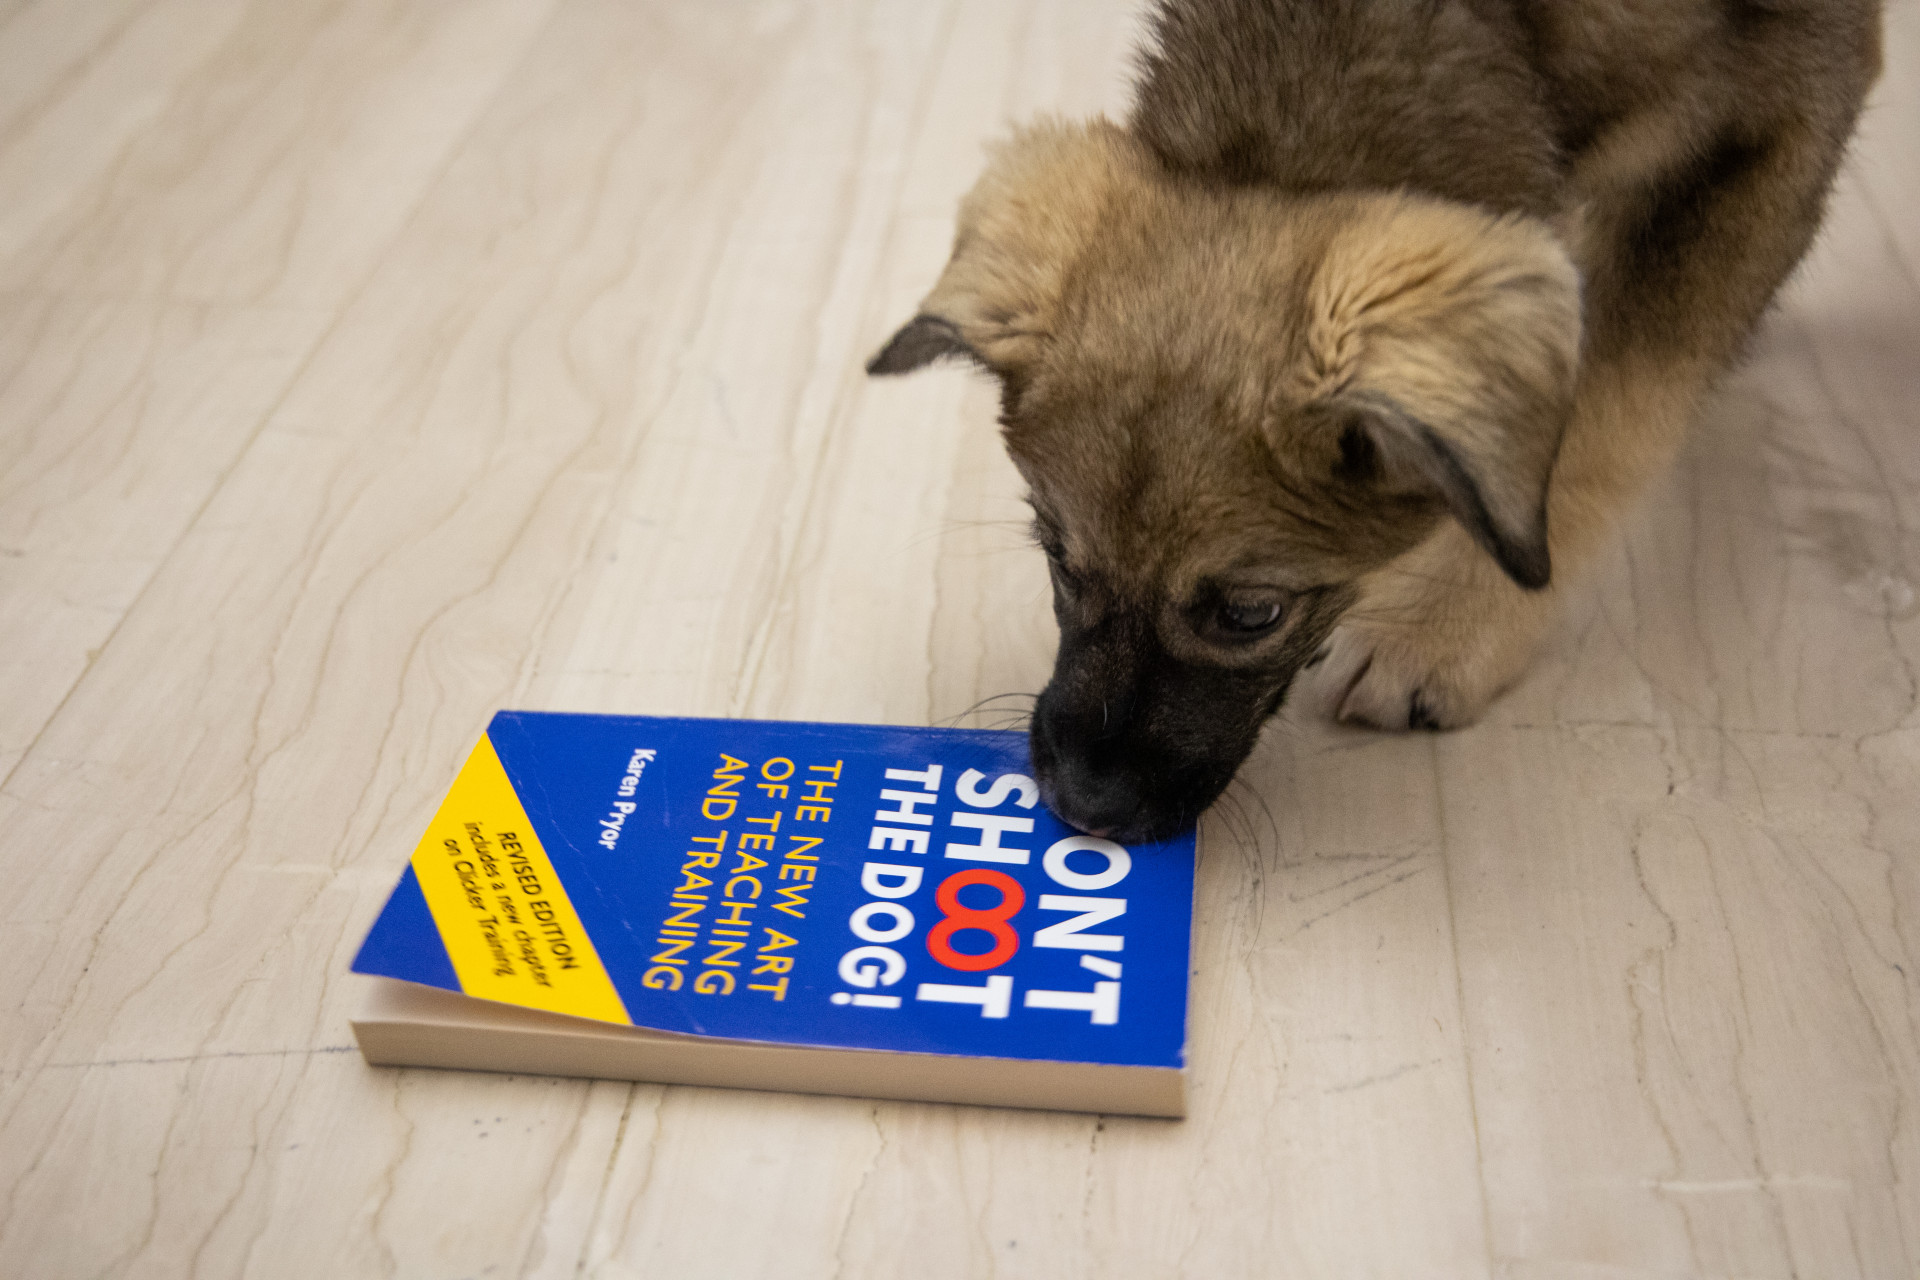 κουταβάκι δαγκώνει ένα βιβλίο σχετικό με την εκπαίδευση σκύλων